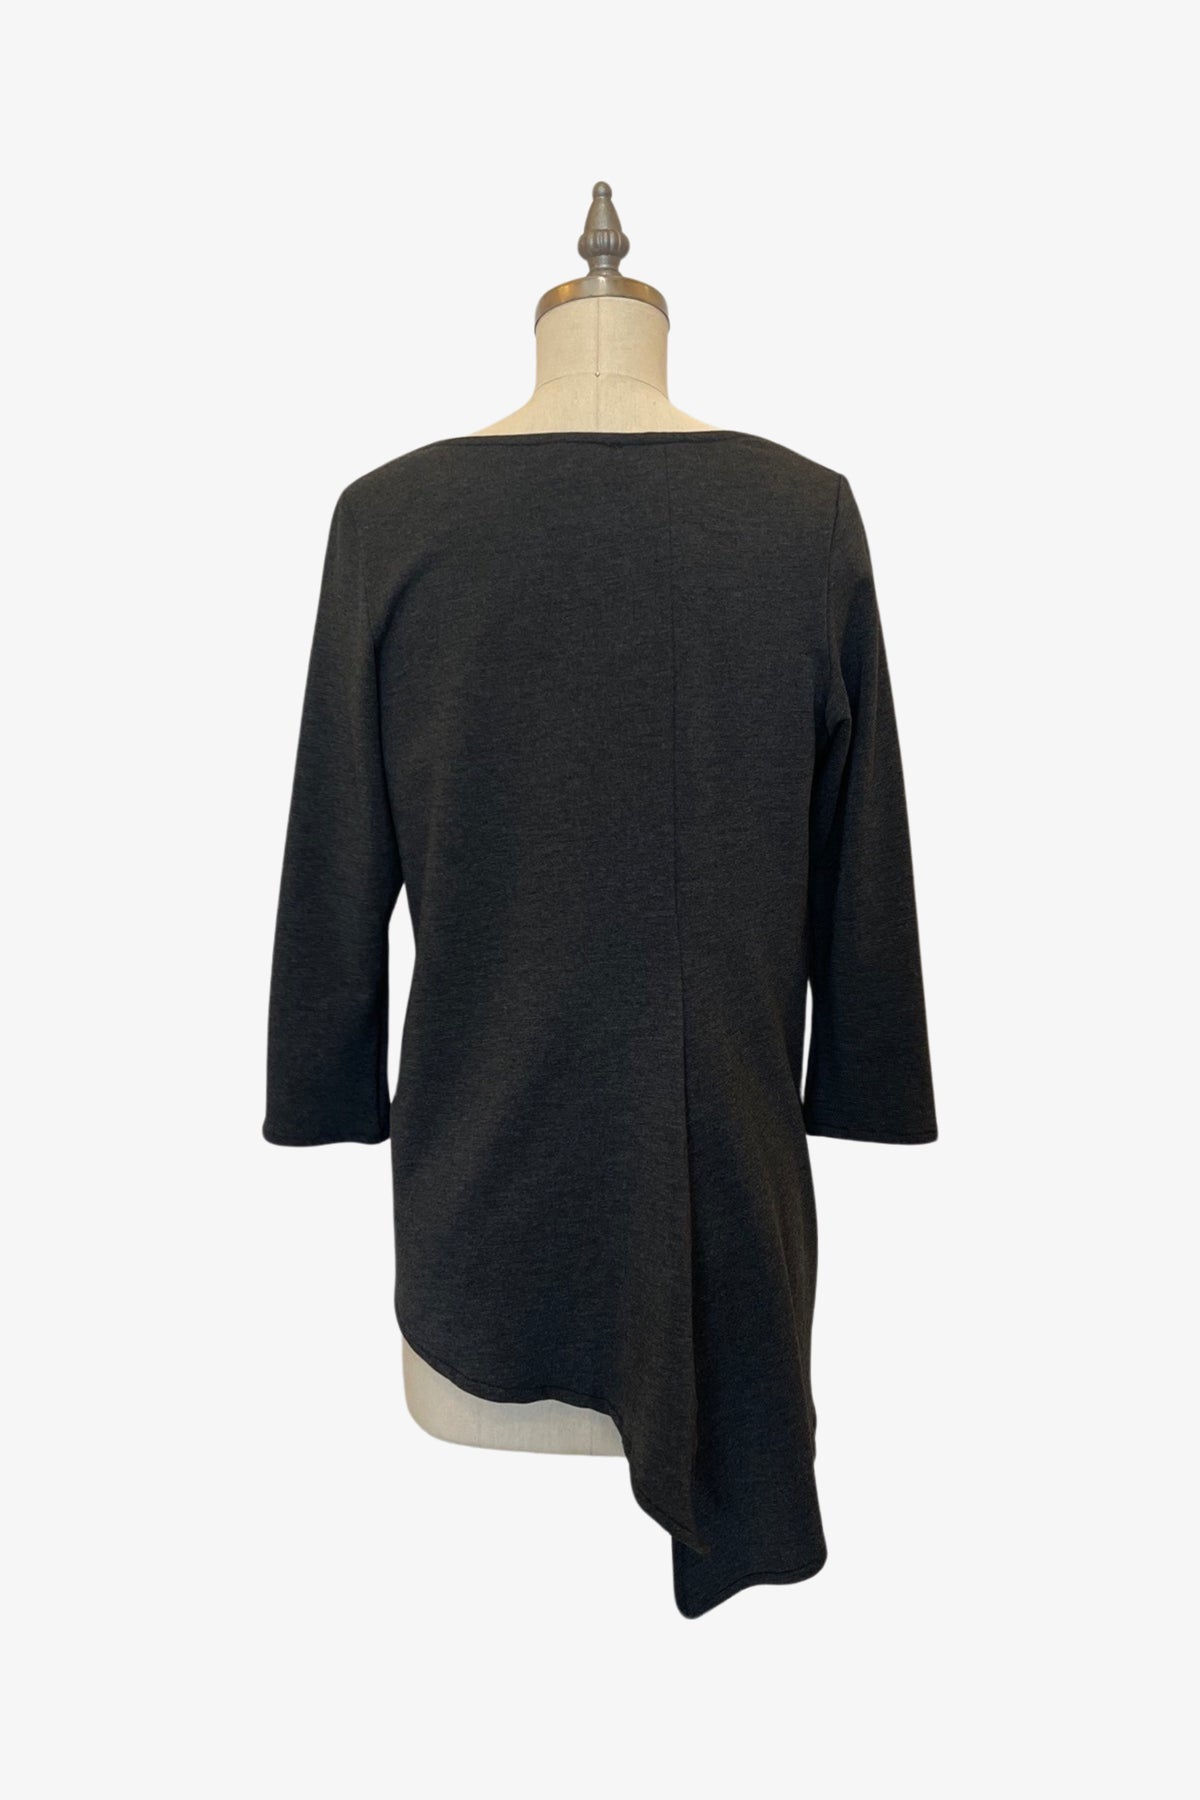 3/4 Sleeve Trapezoid Tunic | Charcoal Fleece